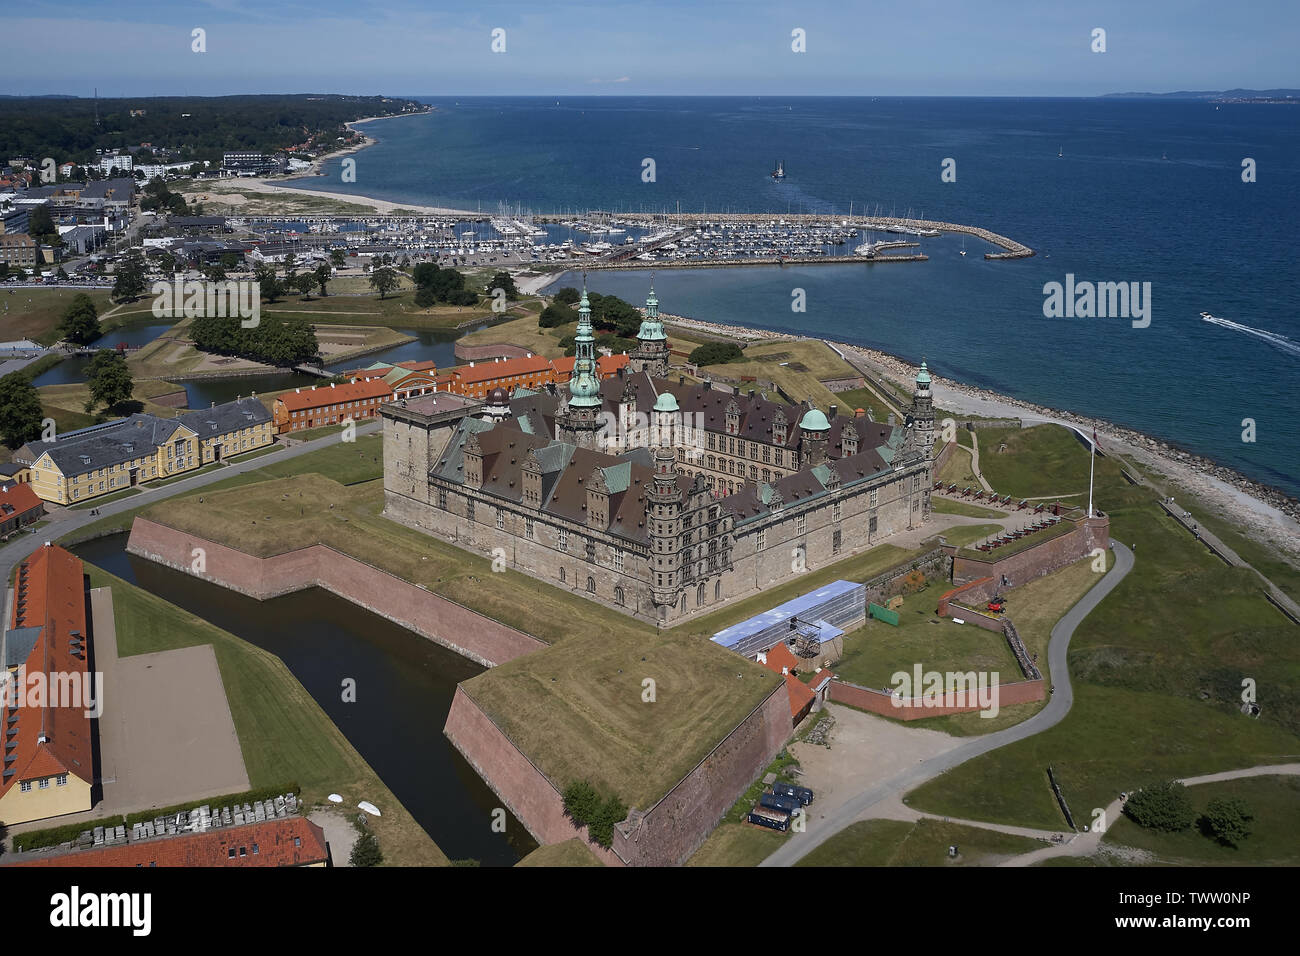 Vue aérienne de l'ancien château de Kronborg situé à Helsingoer, Danemark Banque D'Images